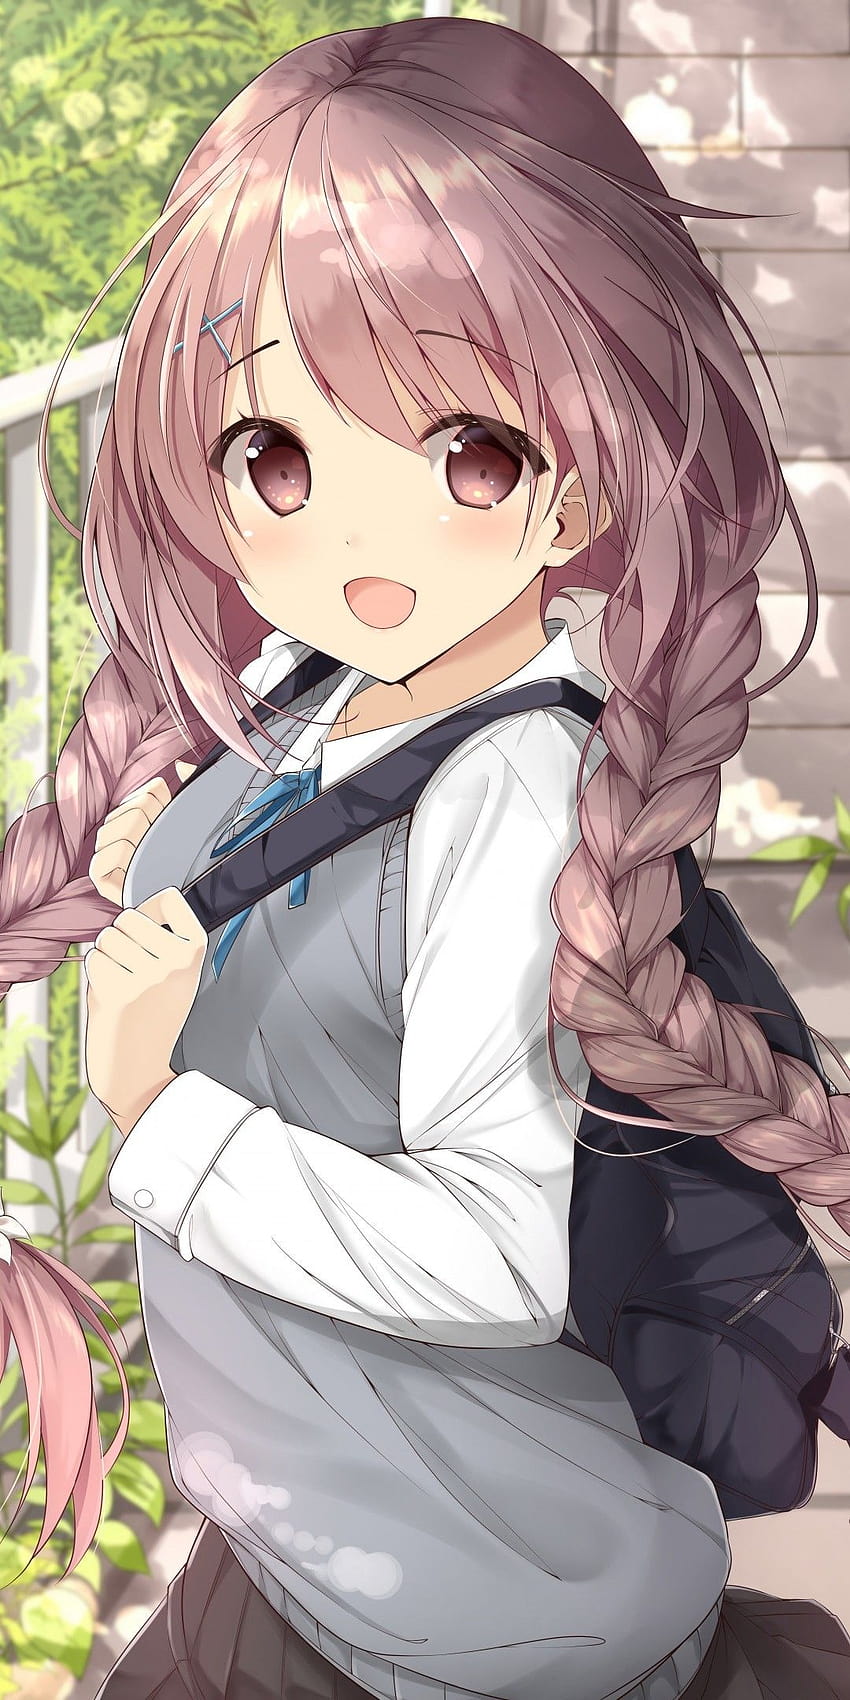 Uniforme Cute Anime Girl School, uniforme de fille anime mignonne et belle Fond d'écran de téléphone HD